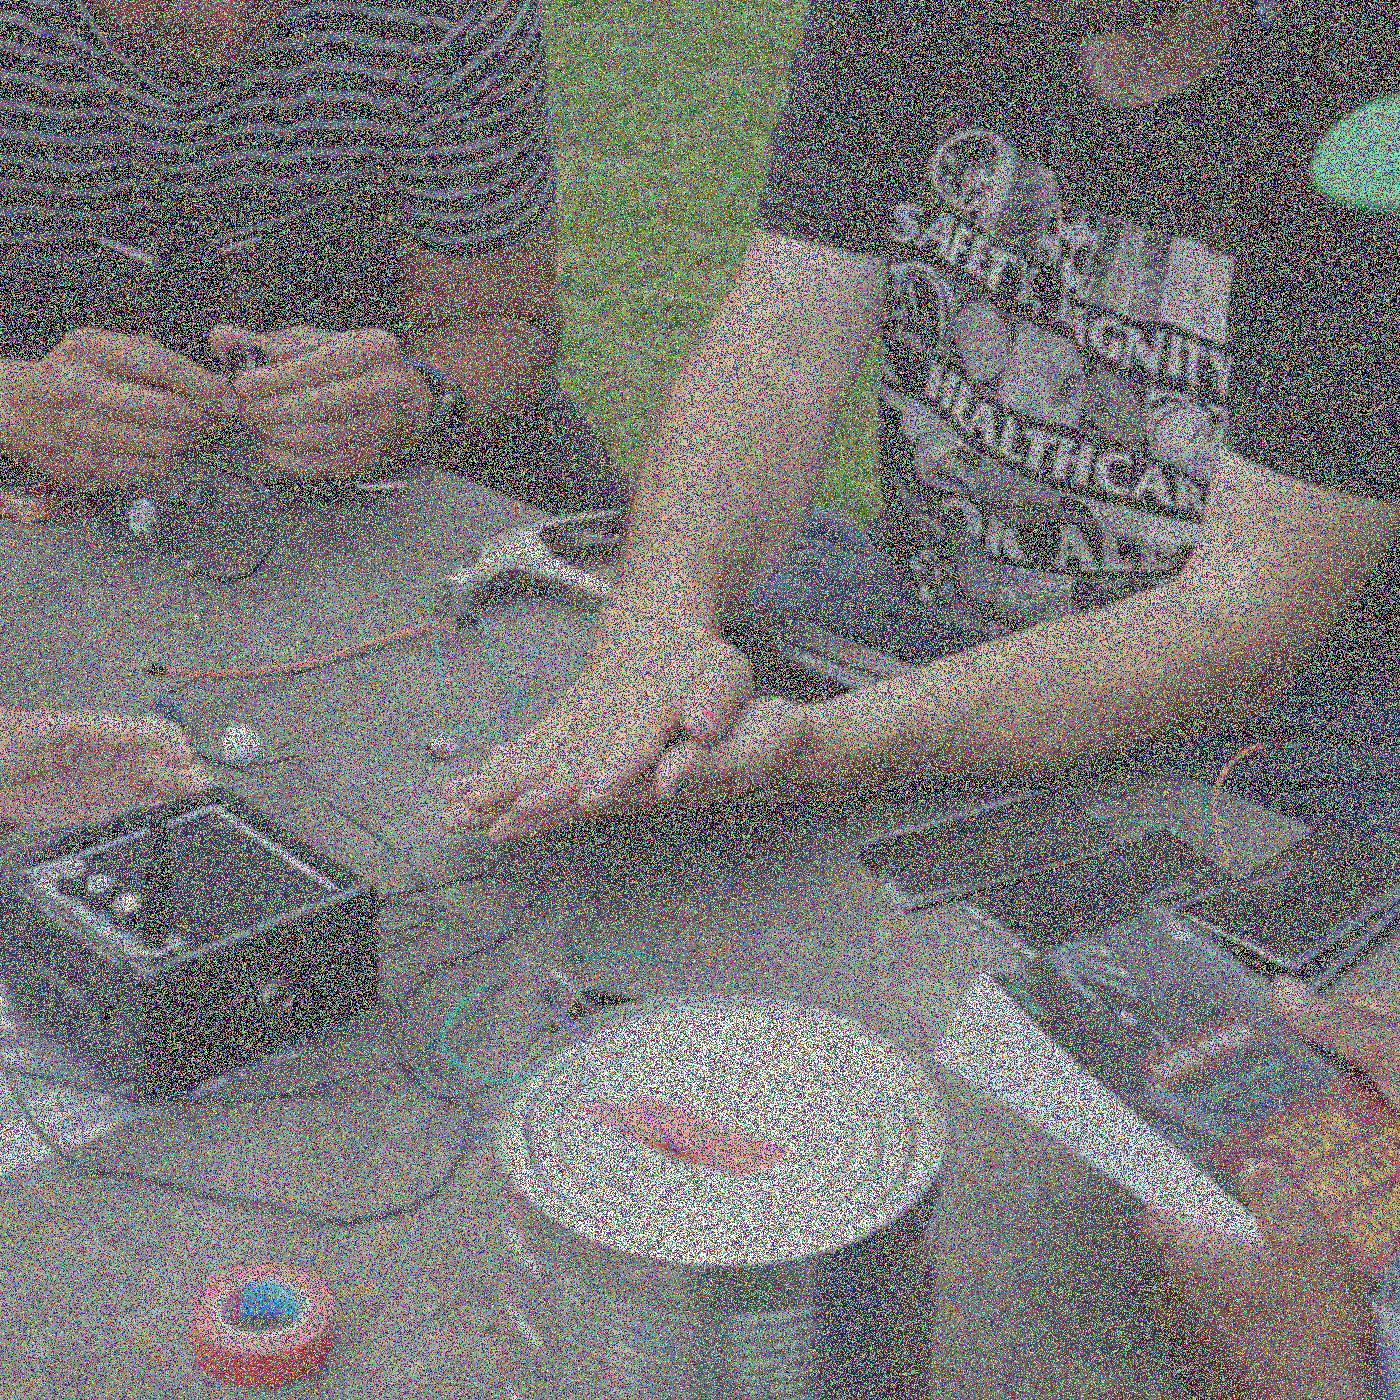 Geanonimiseerde handen zijn bezig met elektronica op een tafel, inclusief kabels, enkele zonnepanelen en een luidspreker.